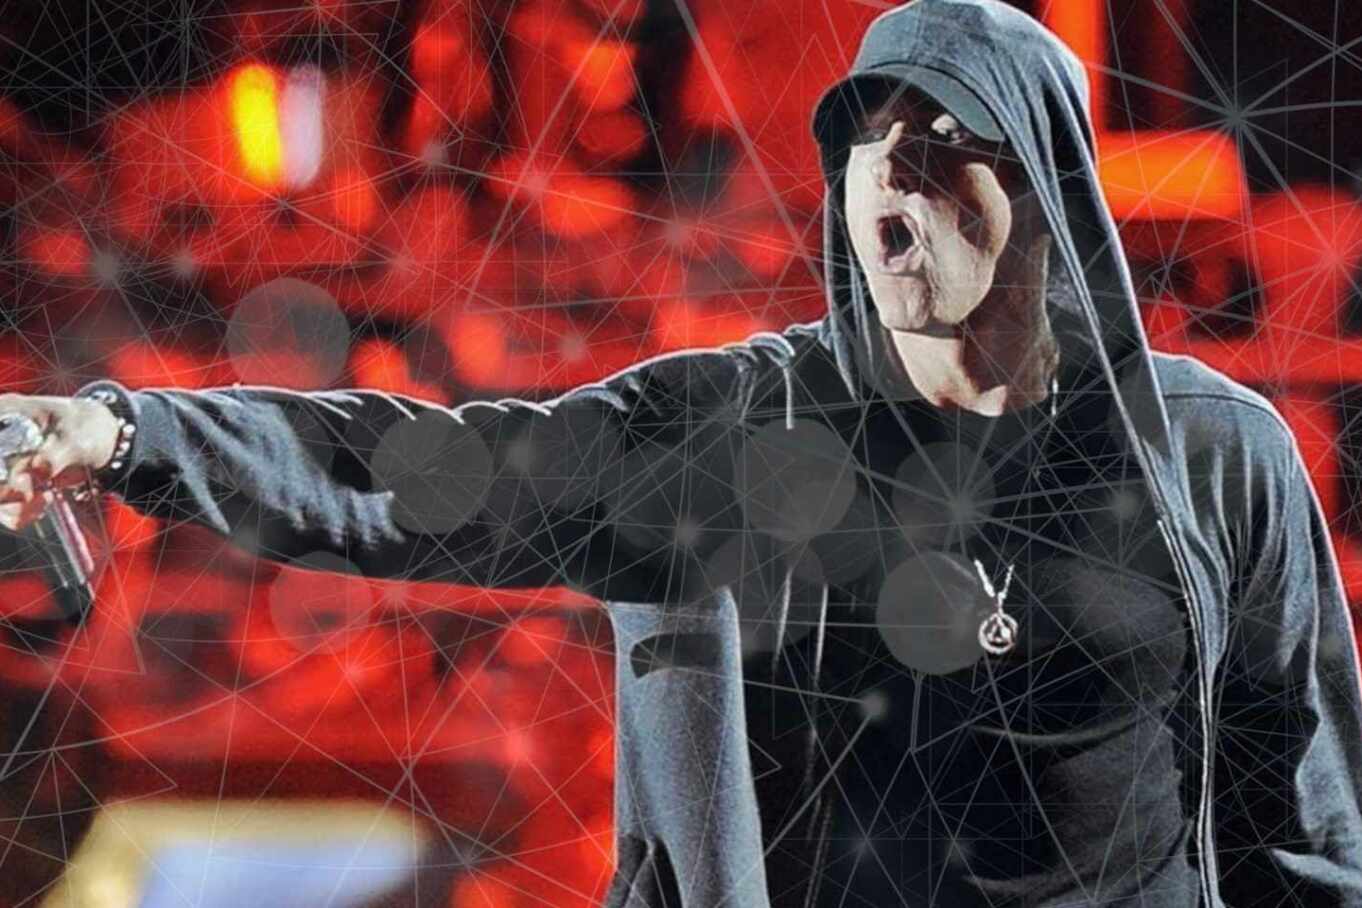 David Guetta imita la voz de Eminem con Inteligencia Artificial en concierto